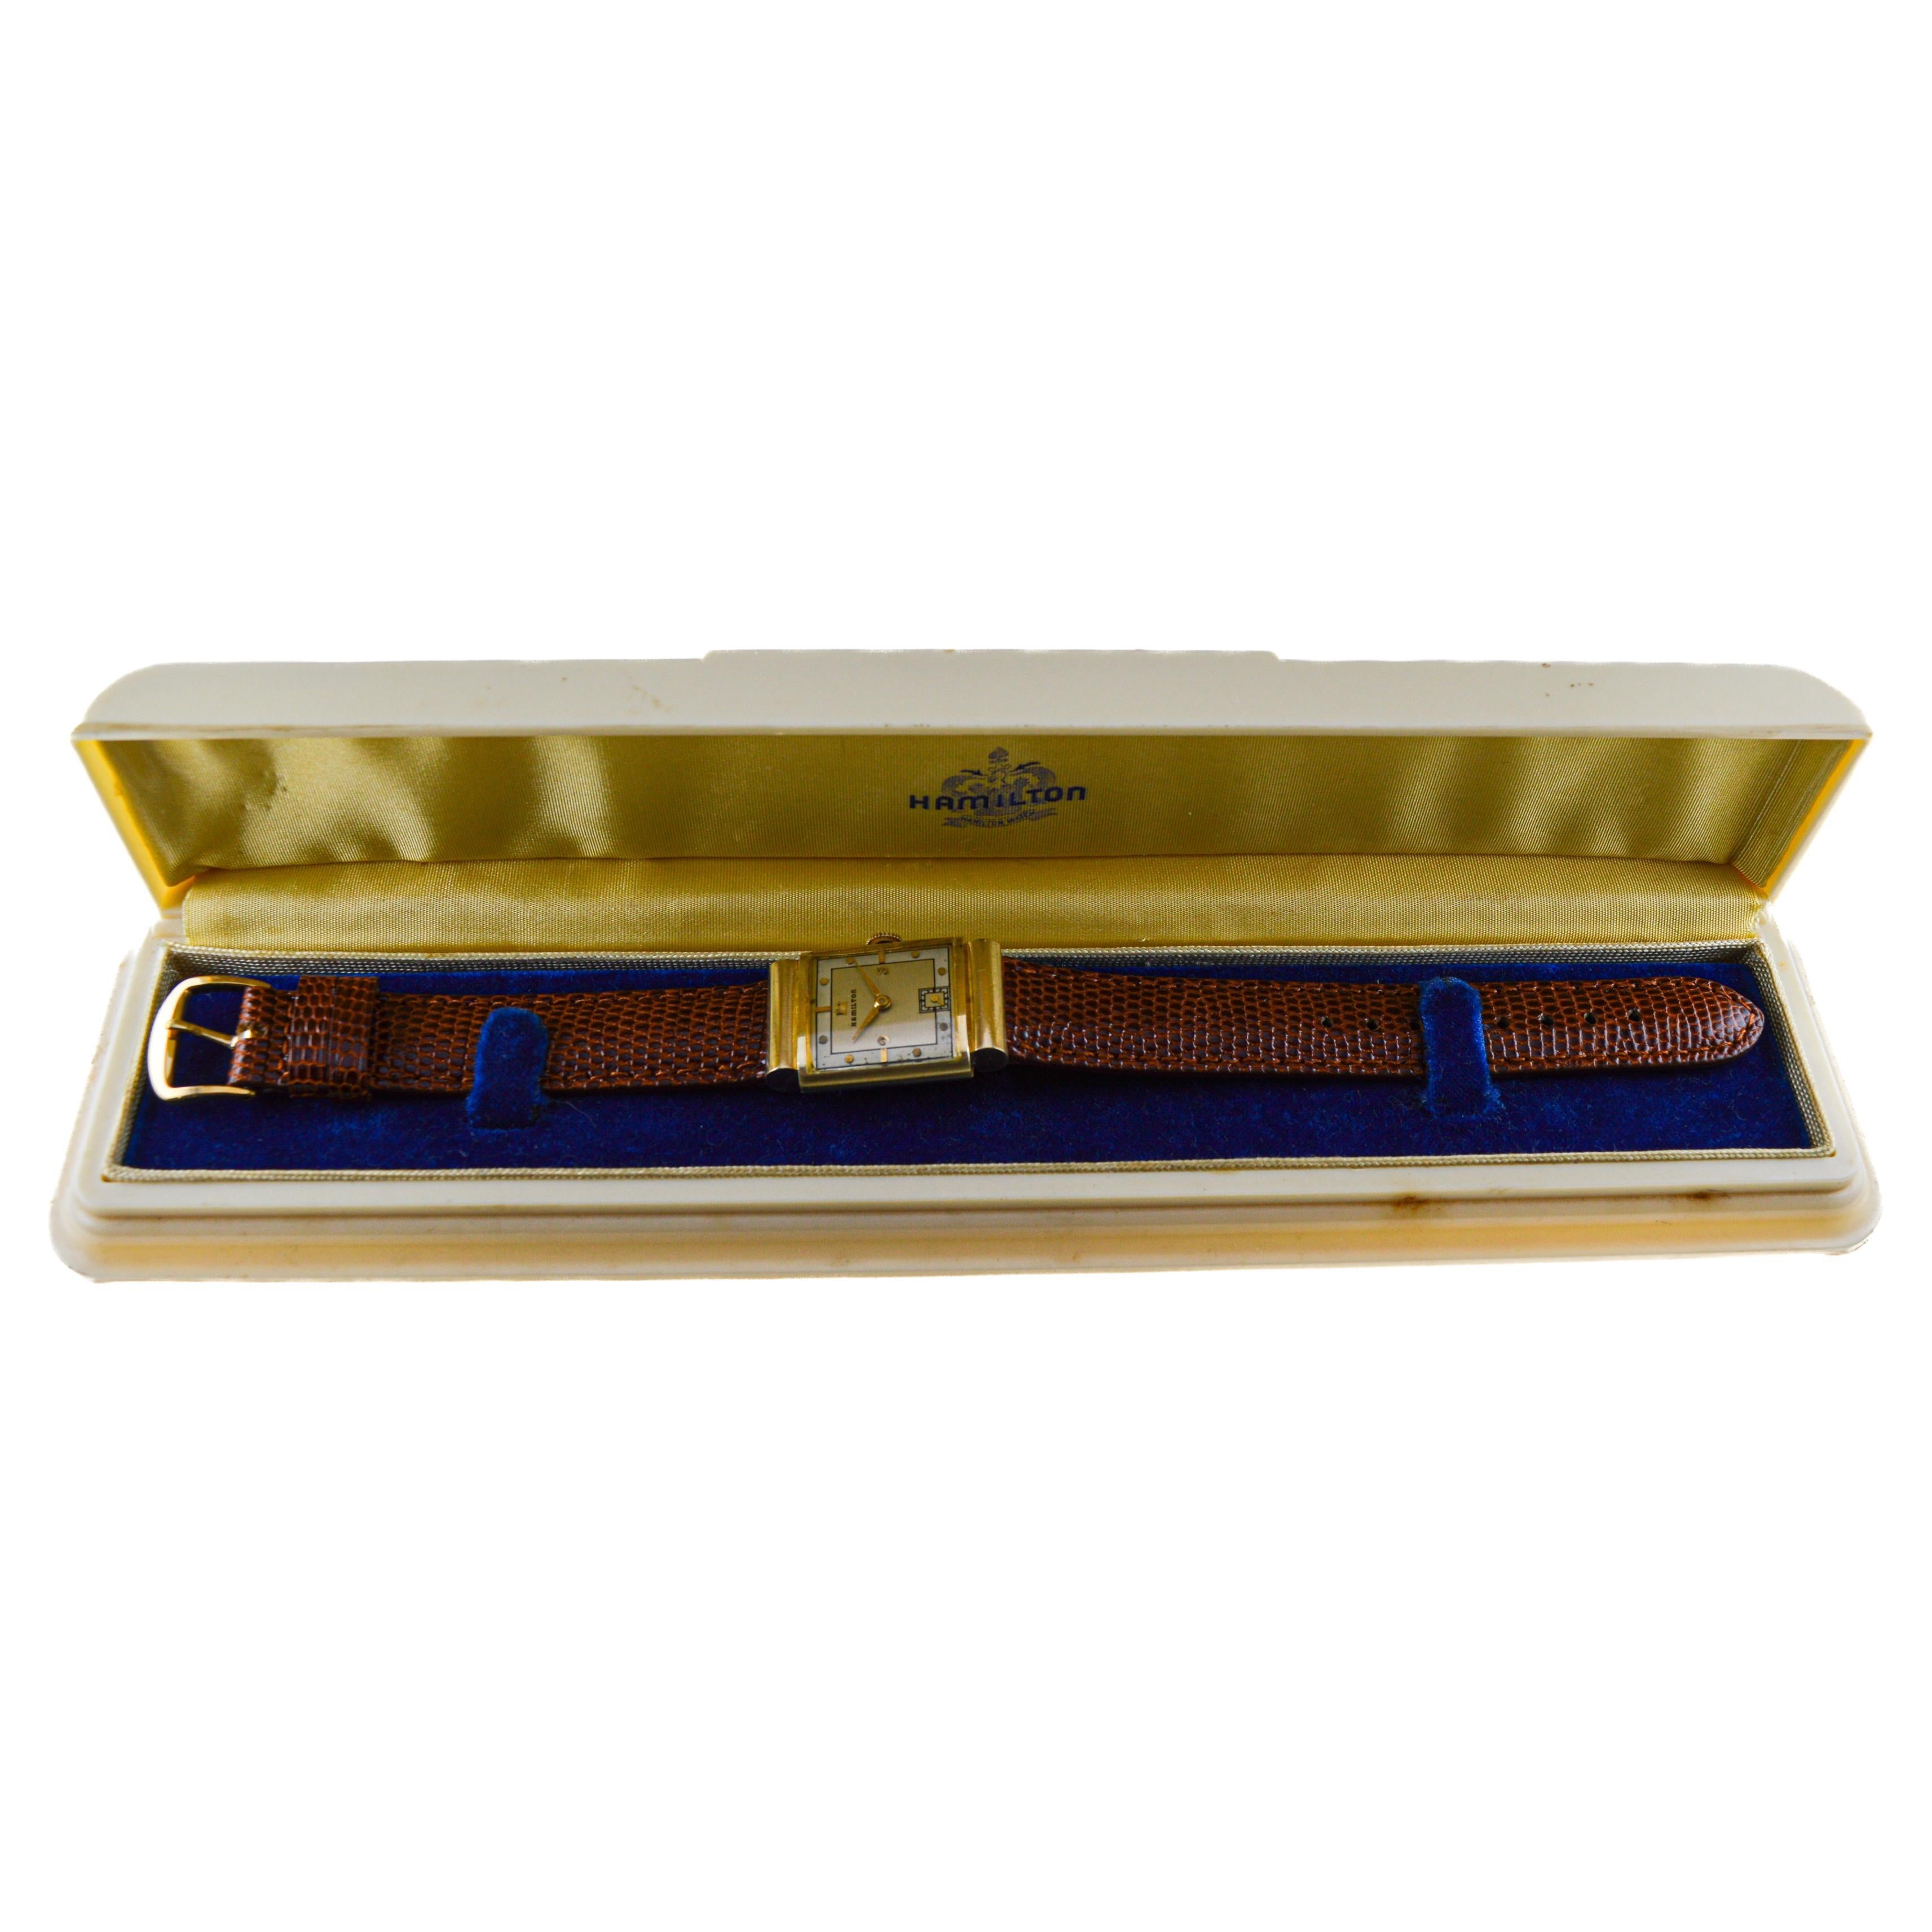 Hamilton Montre Art Déco "Midas" en or 14 carats des années 1940 avec bracelet et boîte d'origine